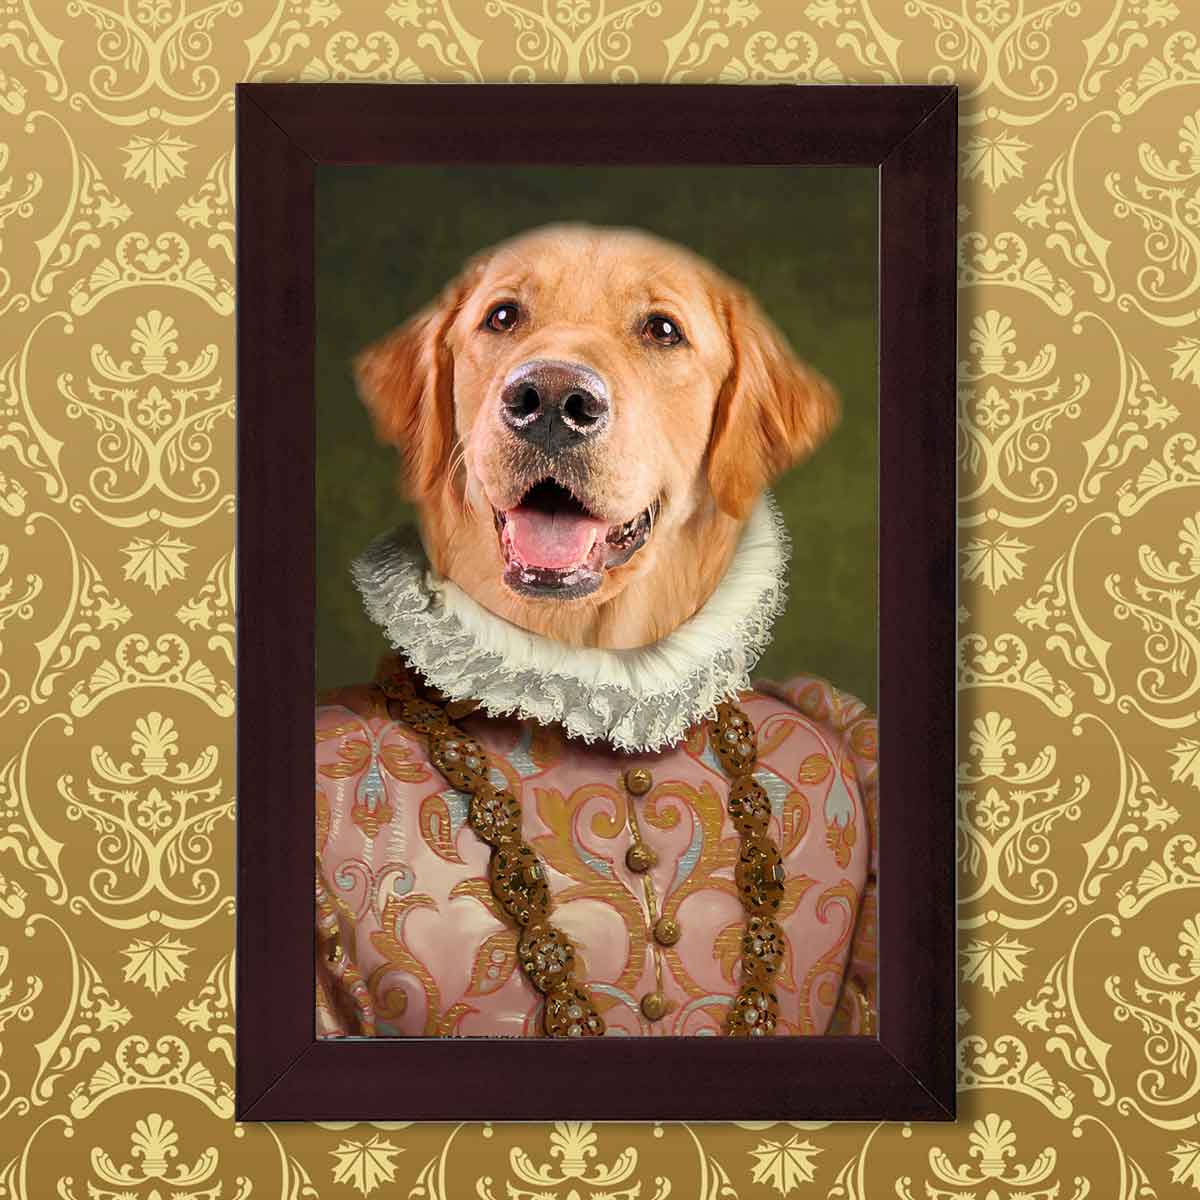 The Great Renaissance Royal Digital Portrait